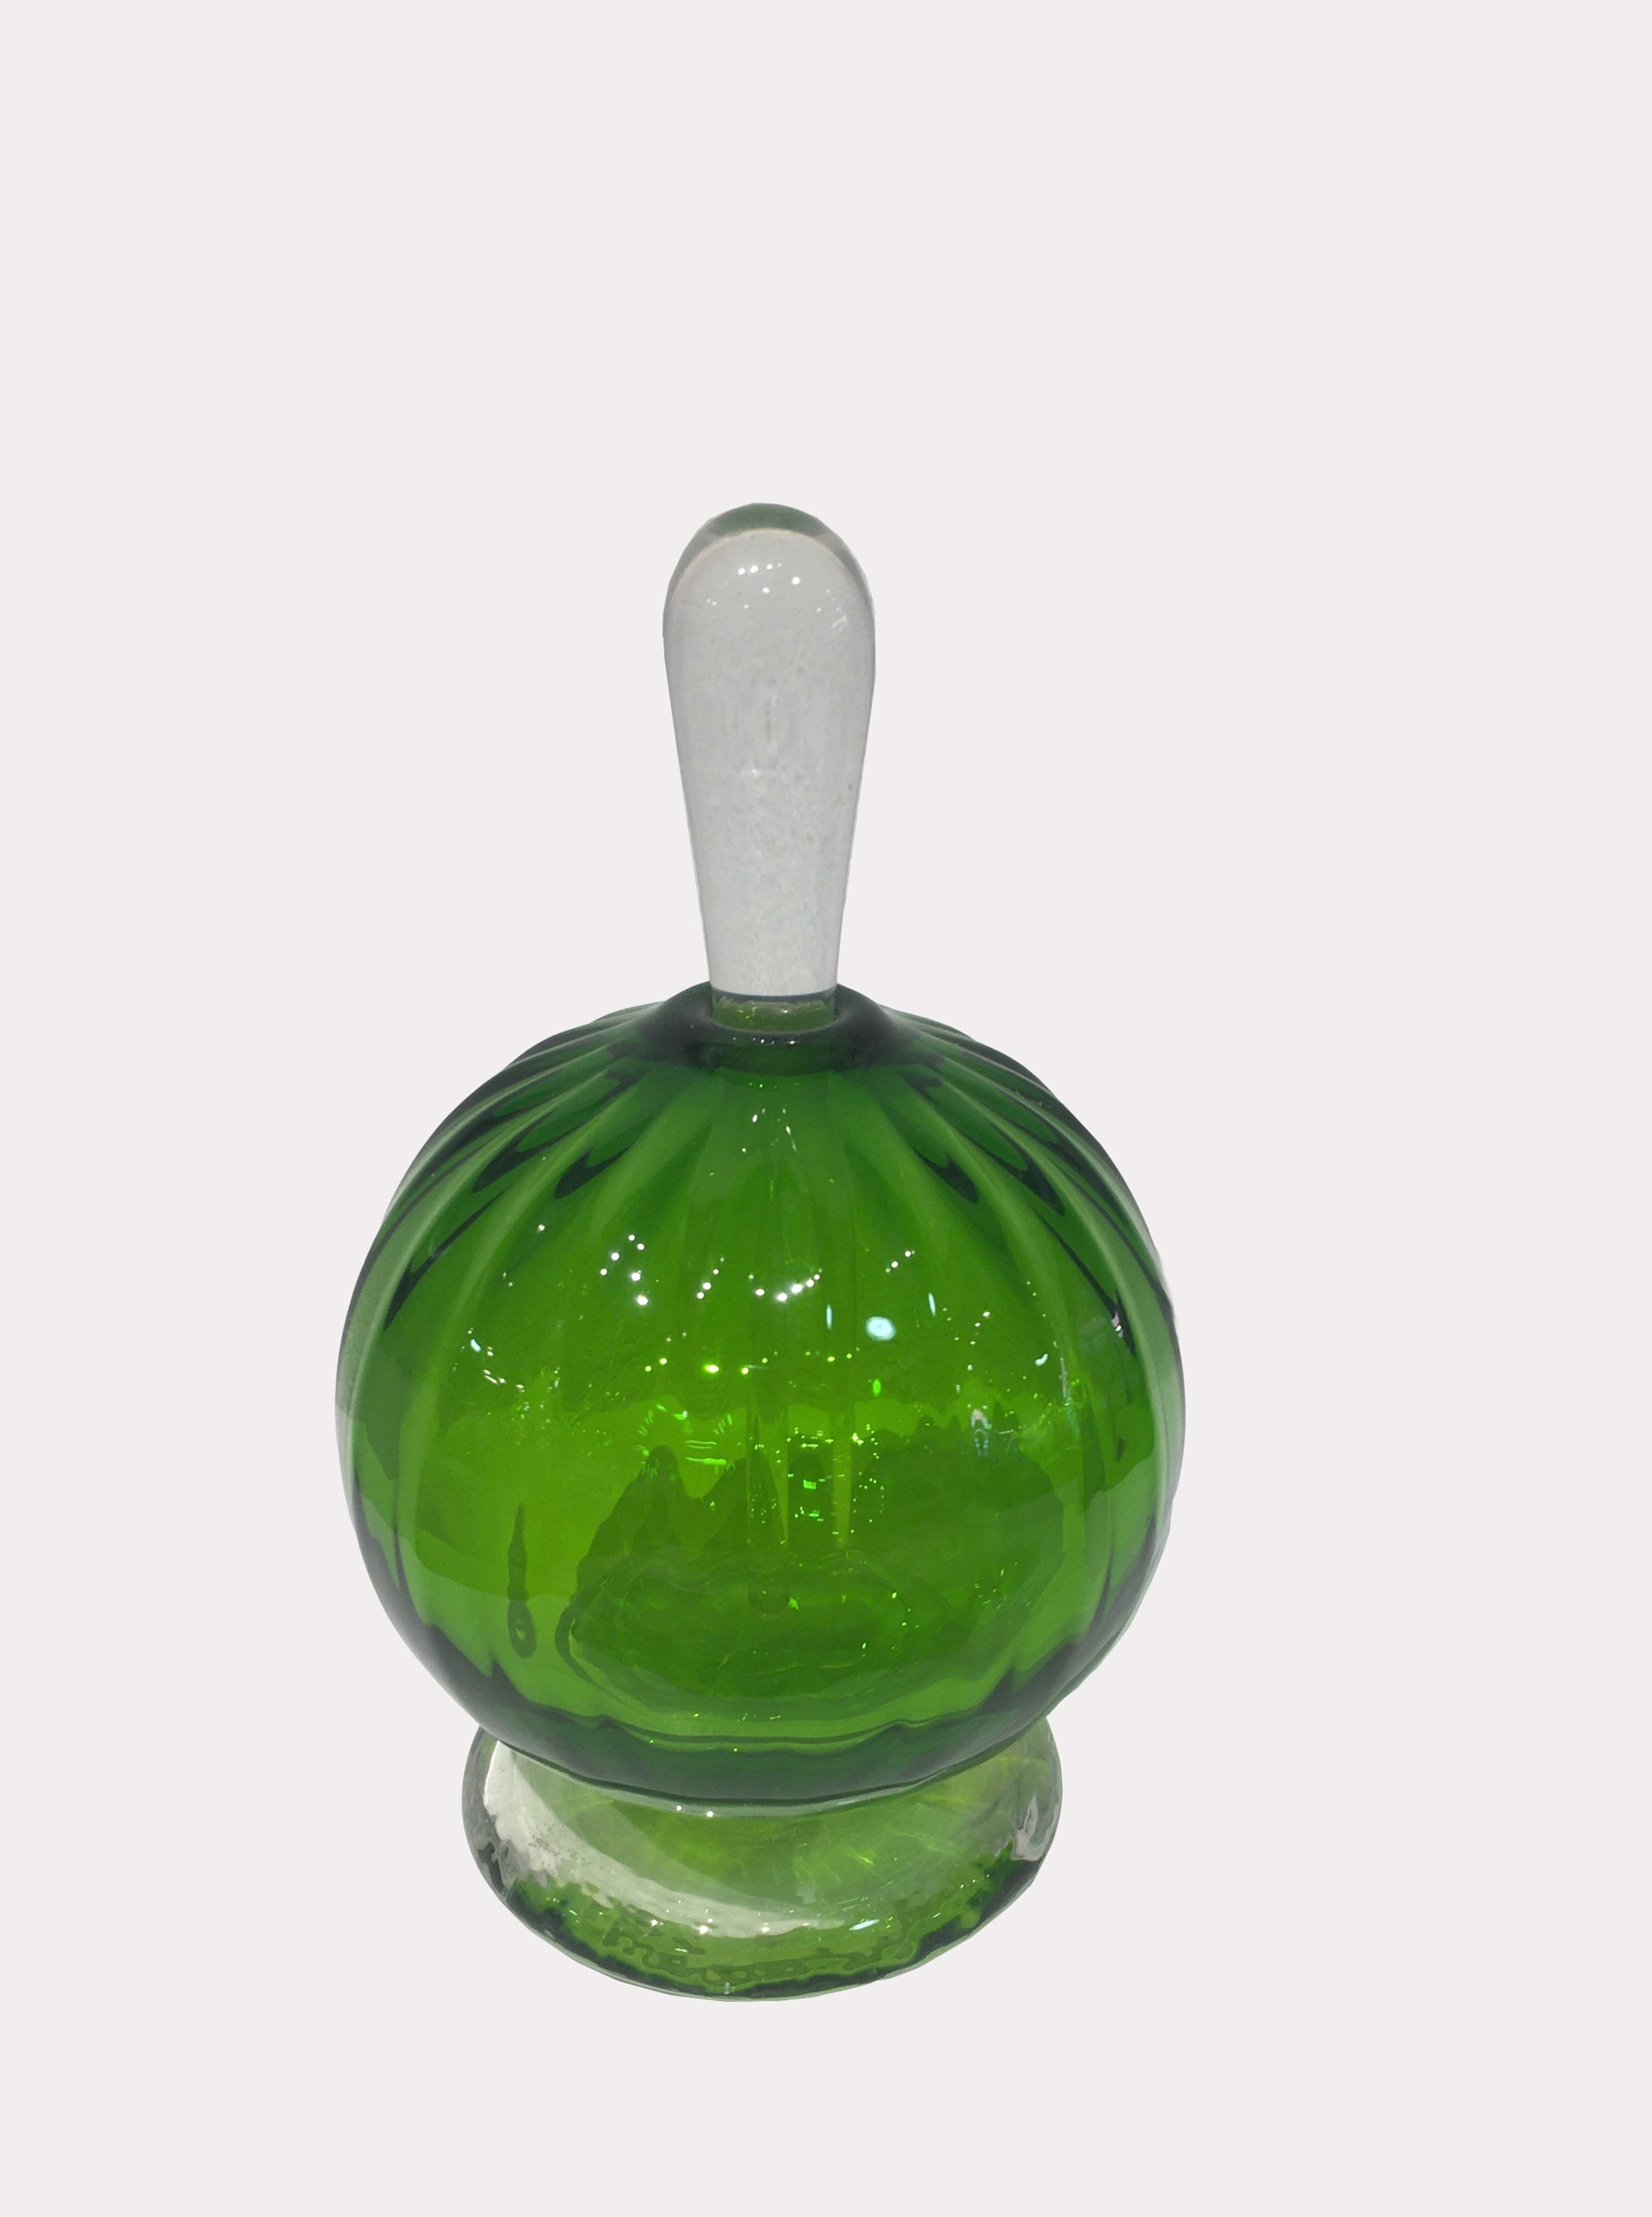 Light Green Perfume Bottle by Fritz Lauenstein